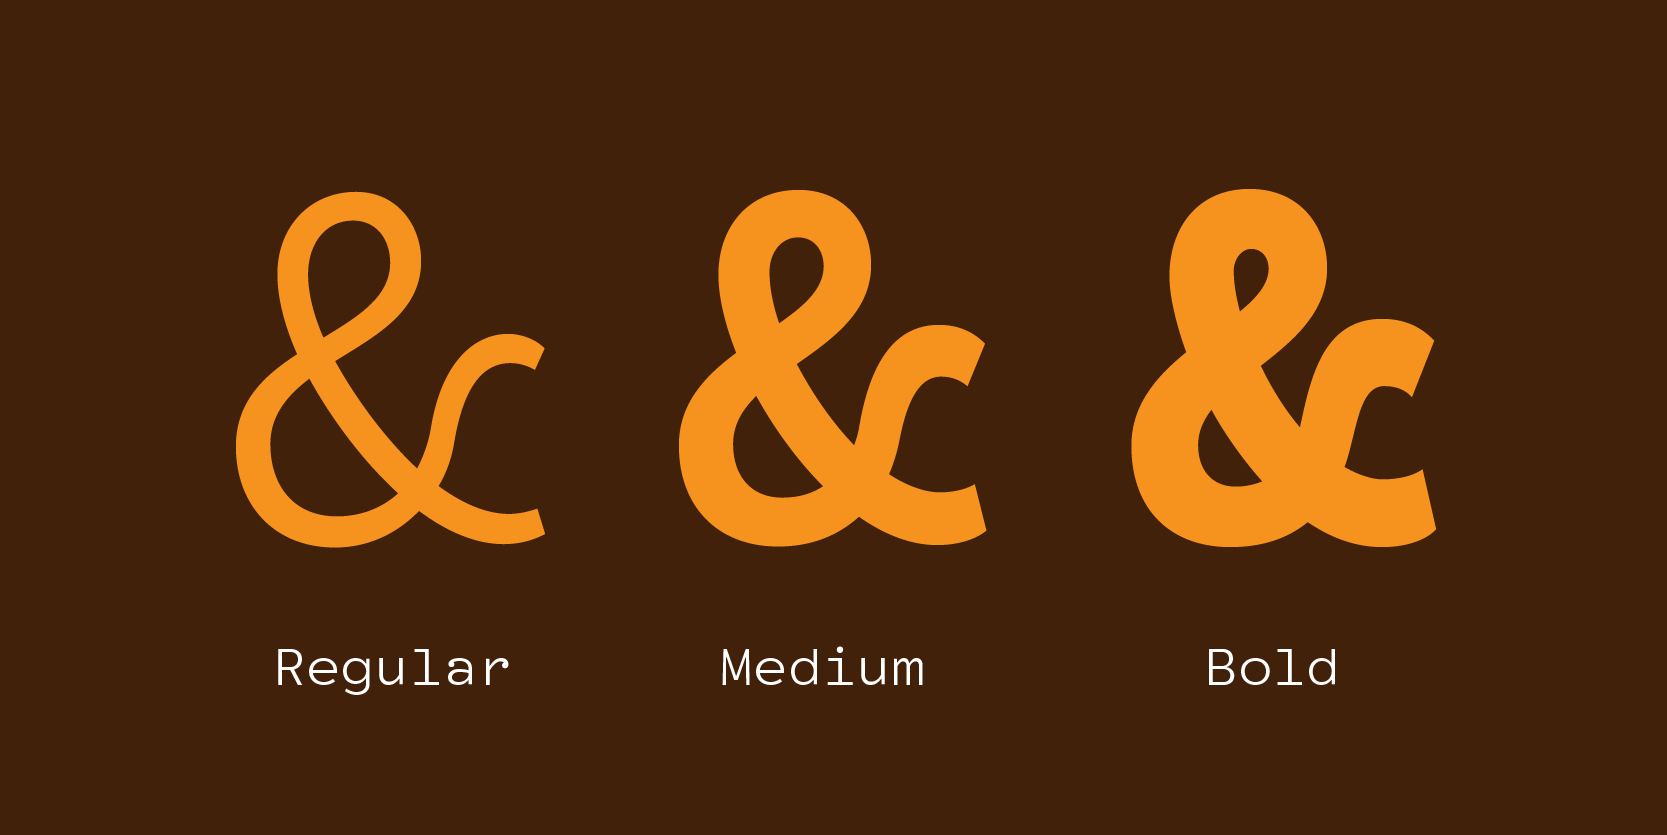 Card displaying MVB Fantabular Sans typeface in various styles